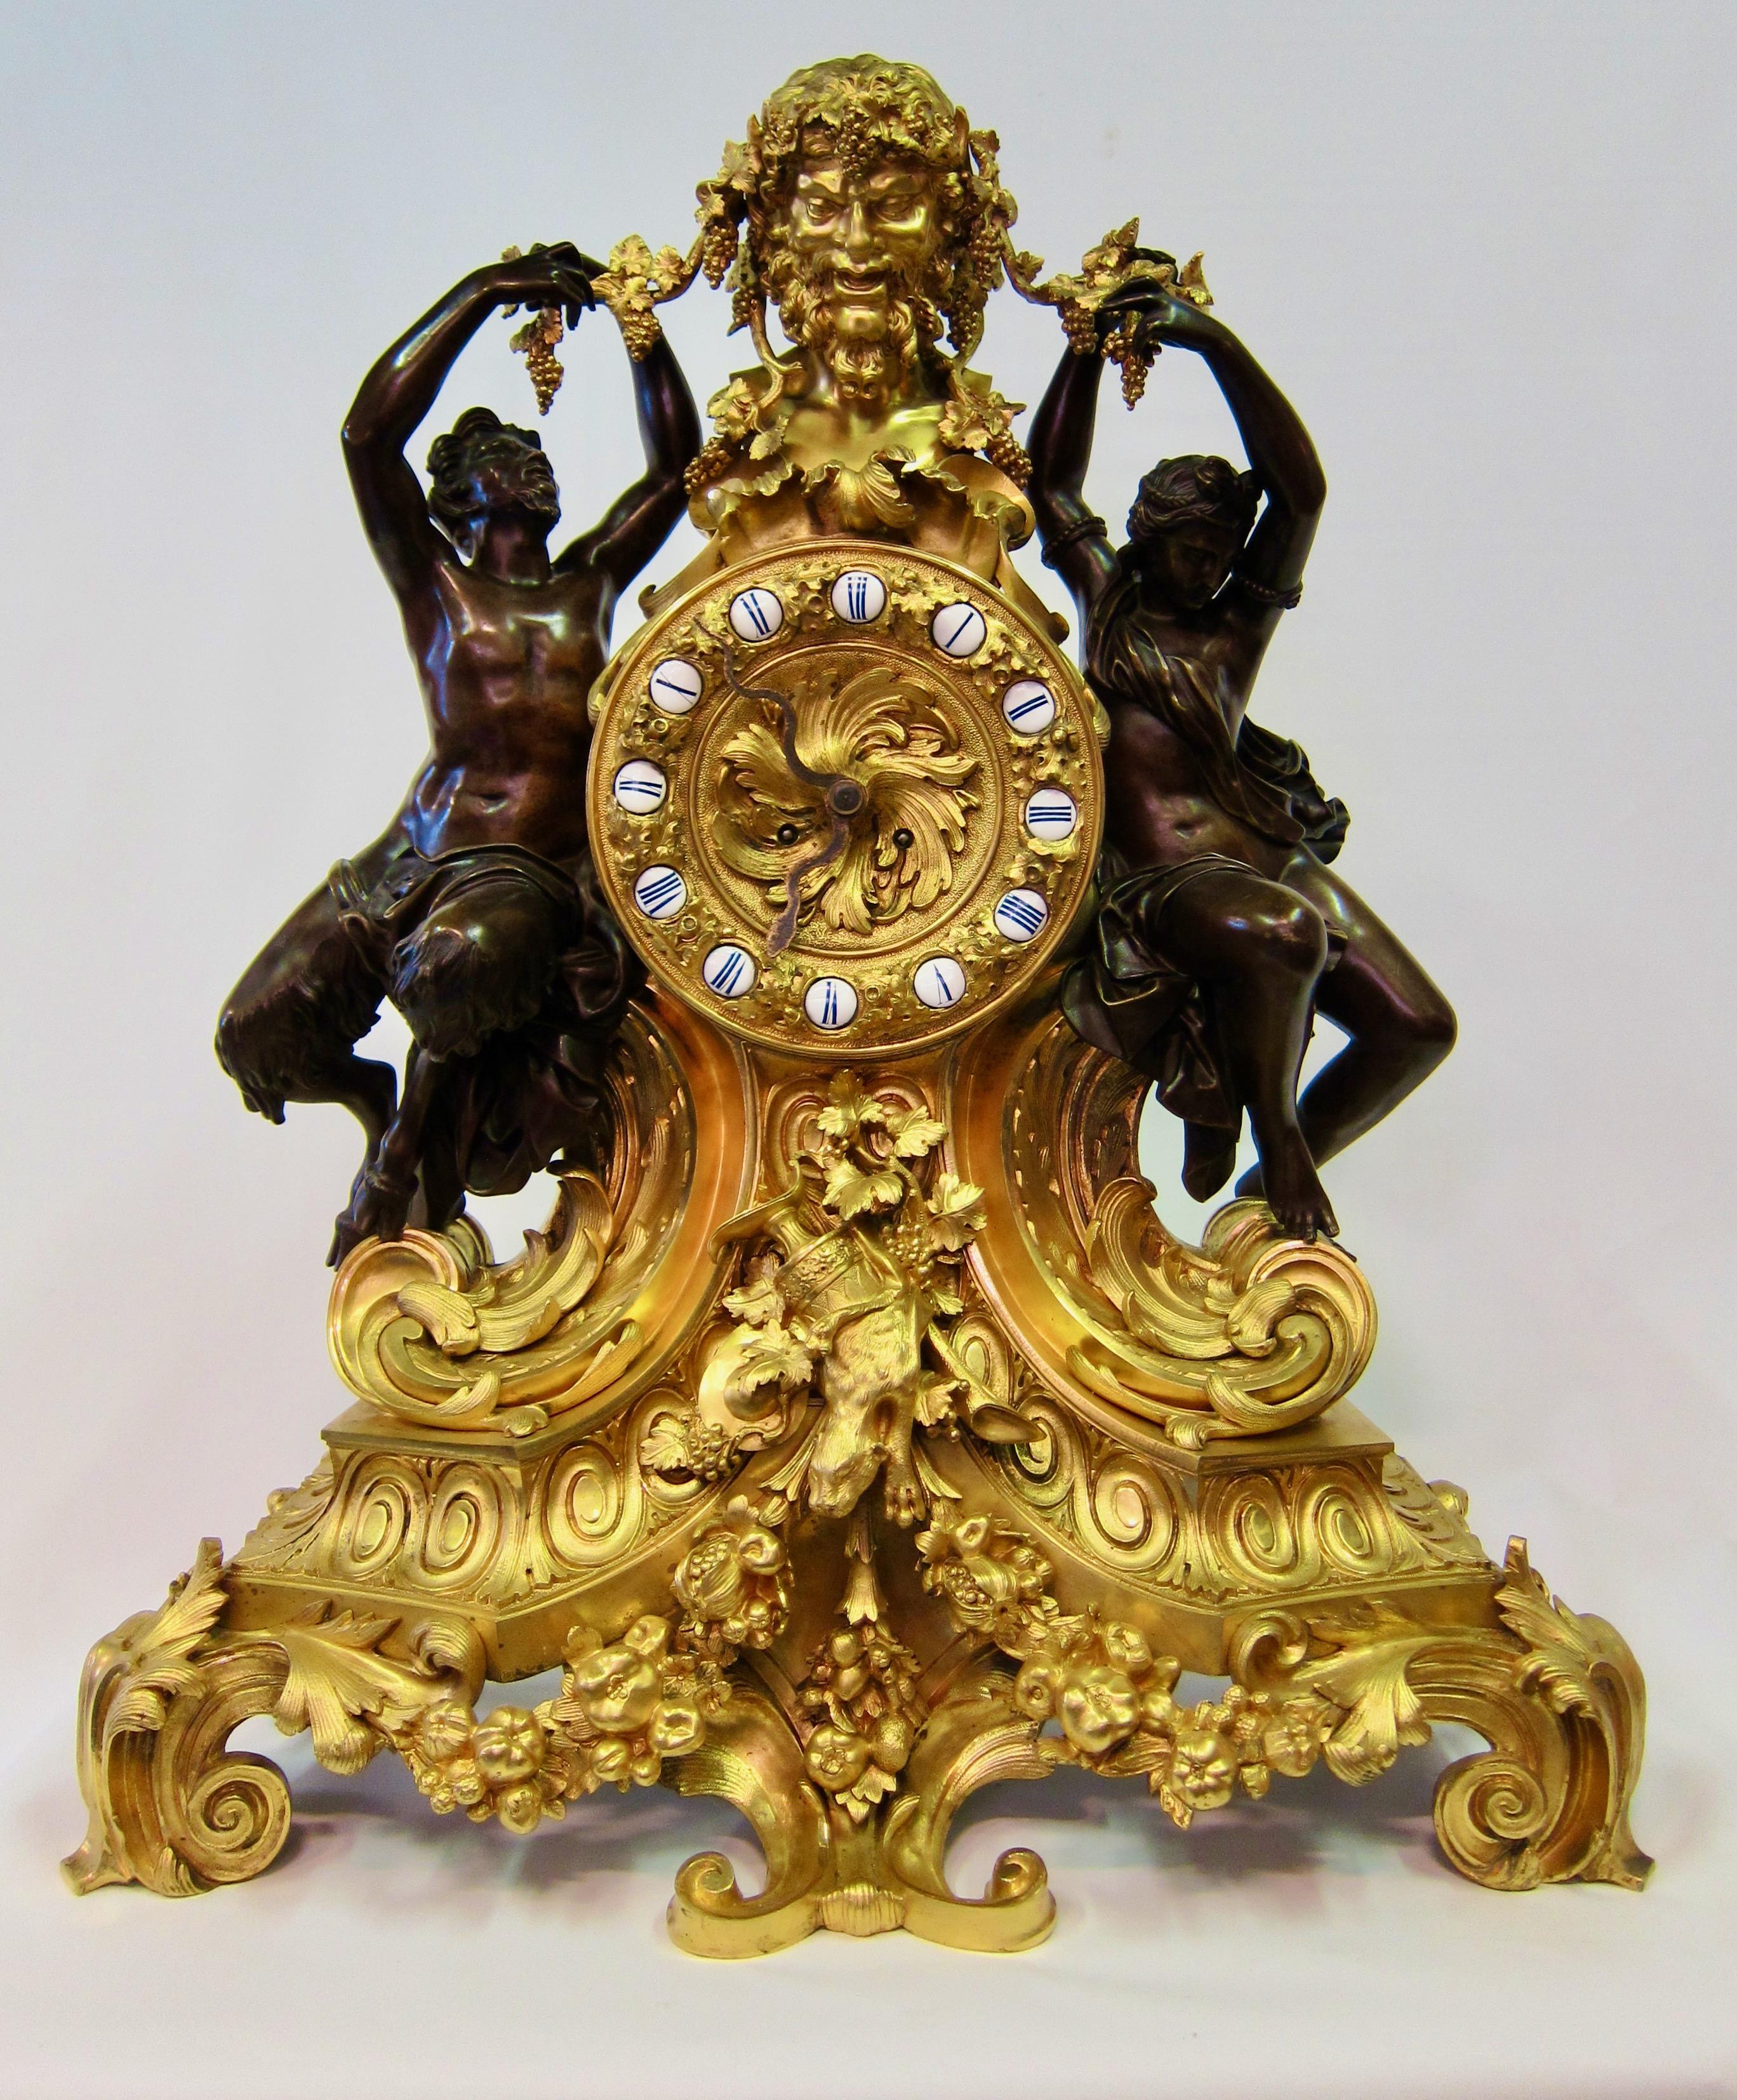 Cette fabuleuse horloge de palais est conçue et exécutée à Paris, en France. L'horloge monumentale est magnifiquement coulée en bronze et conserve sa dorure au mercure d'origine qui met parfaitement en valeur les figures patinées foncées. Cette